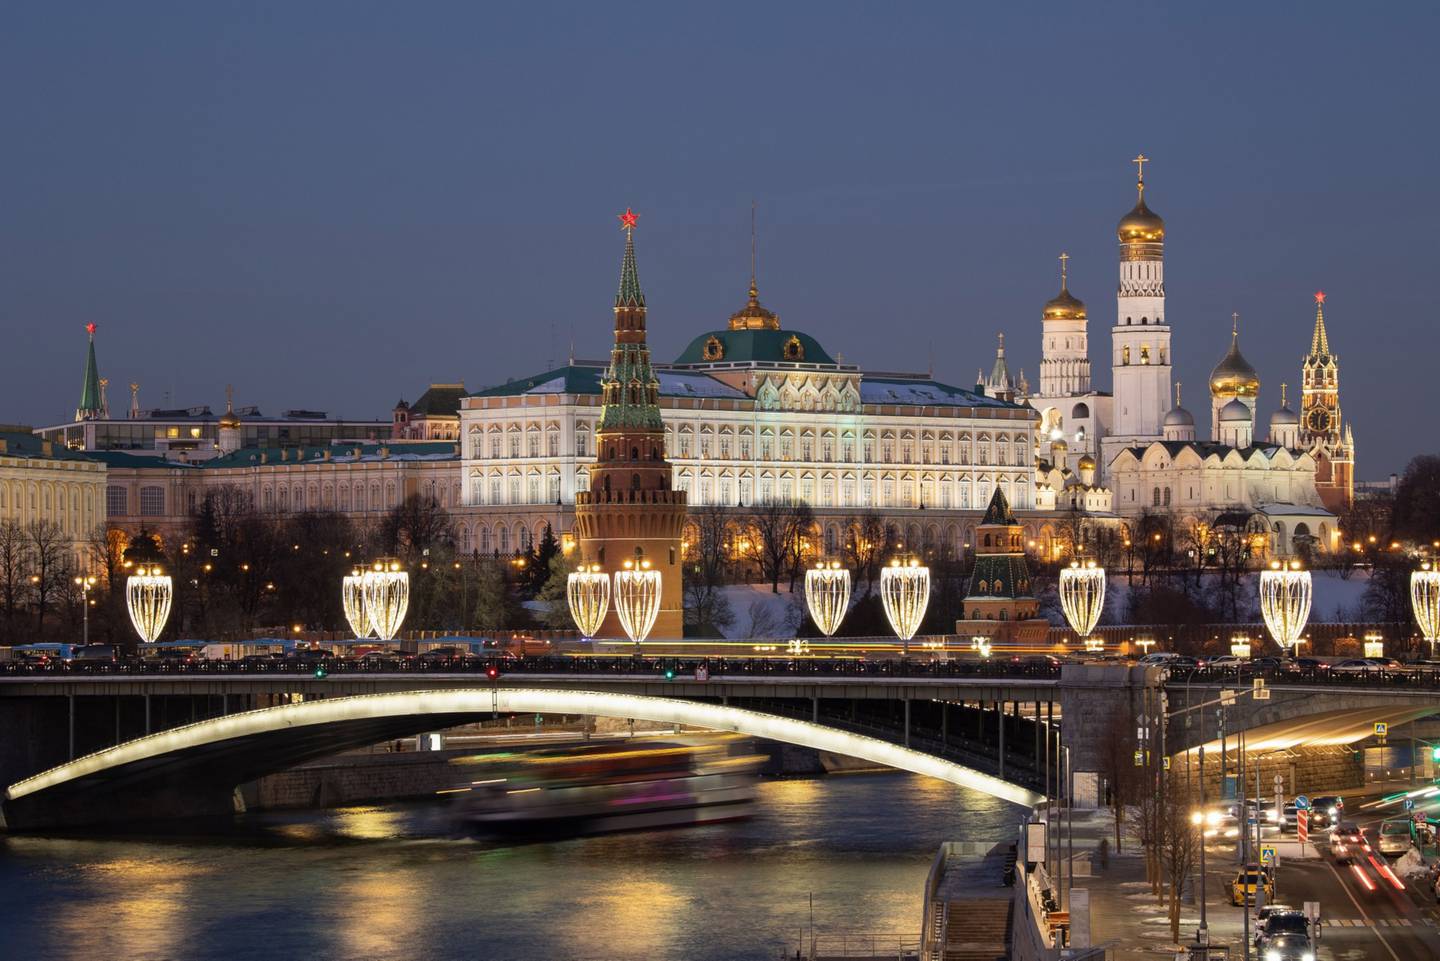 Tráfico intenso en un puente frente al Gran Palacio del Kremlin por la noche en Moscú, Rusia, el martes 15 de febrero de 2022.